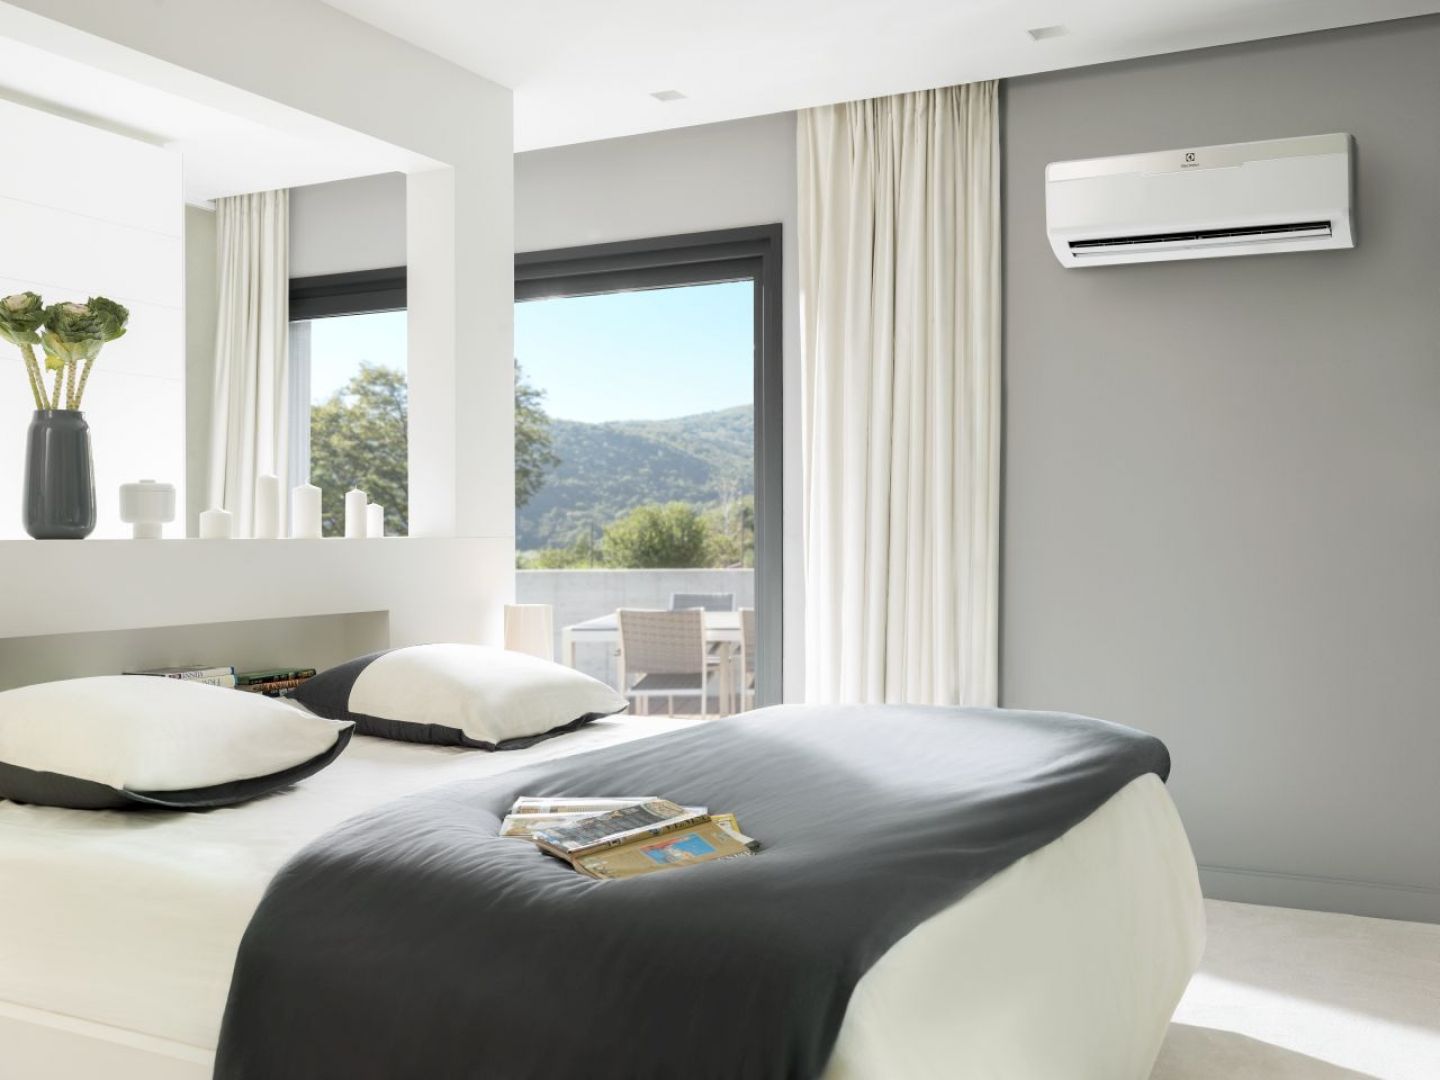 Nowoczesne klimatyzatory są najskuteczniejszym sposobem na ochłodzenie powietrza w domu. Decydując się na taki zakup, warto wziąć pod uwagę przede wszystkim funkcjonalność i komfort użytkowania. Fot. Electrolux